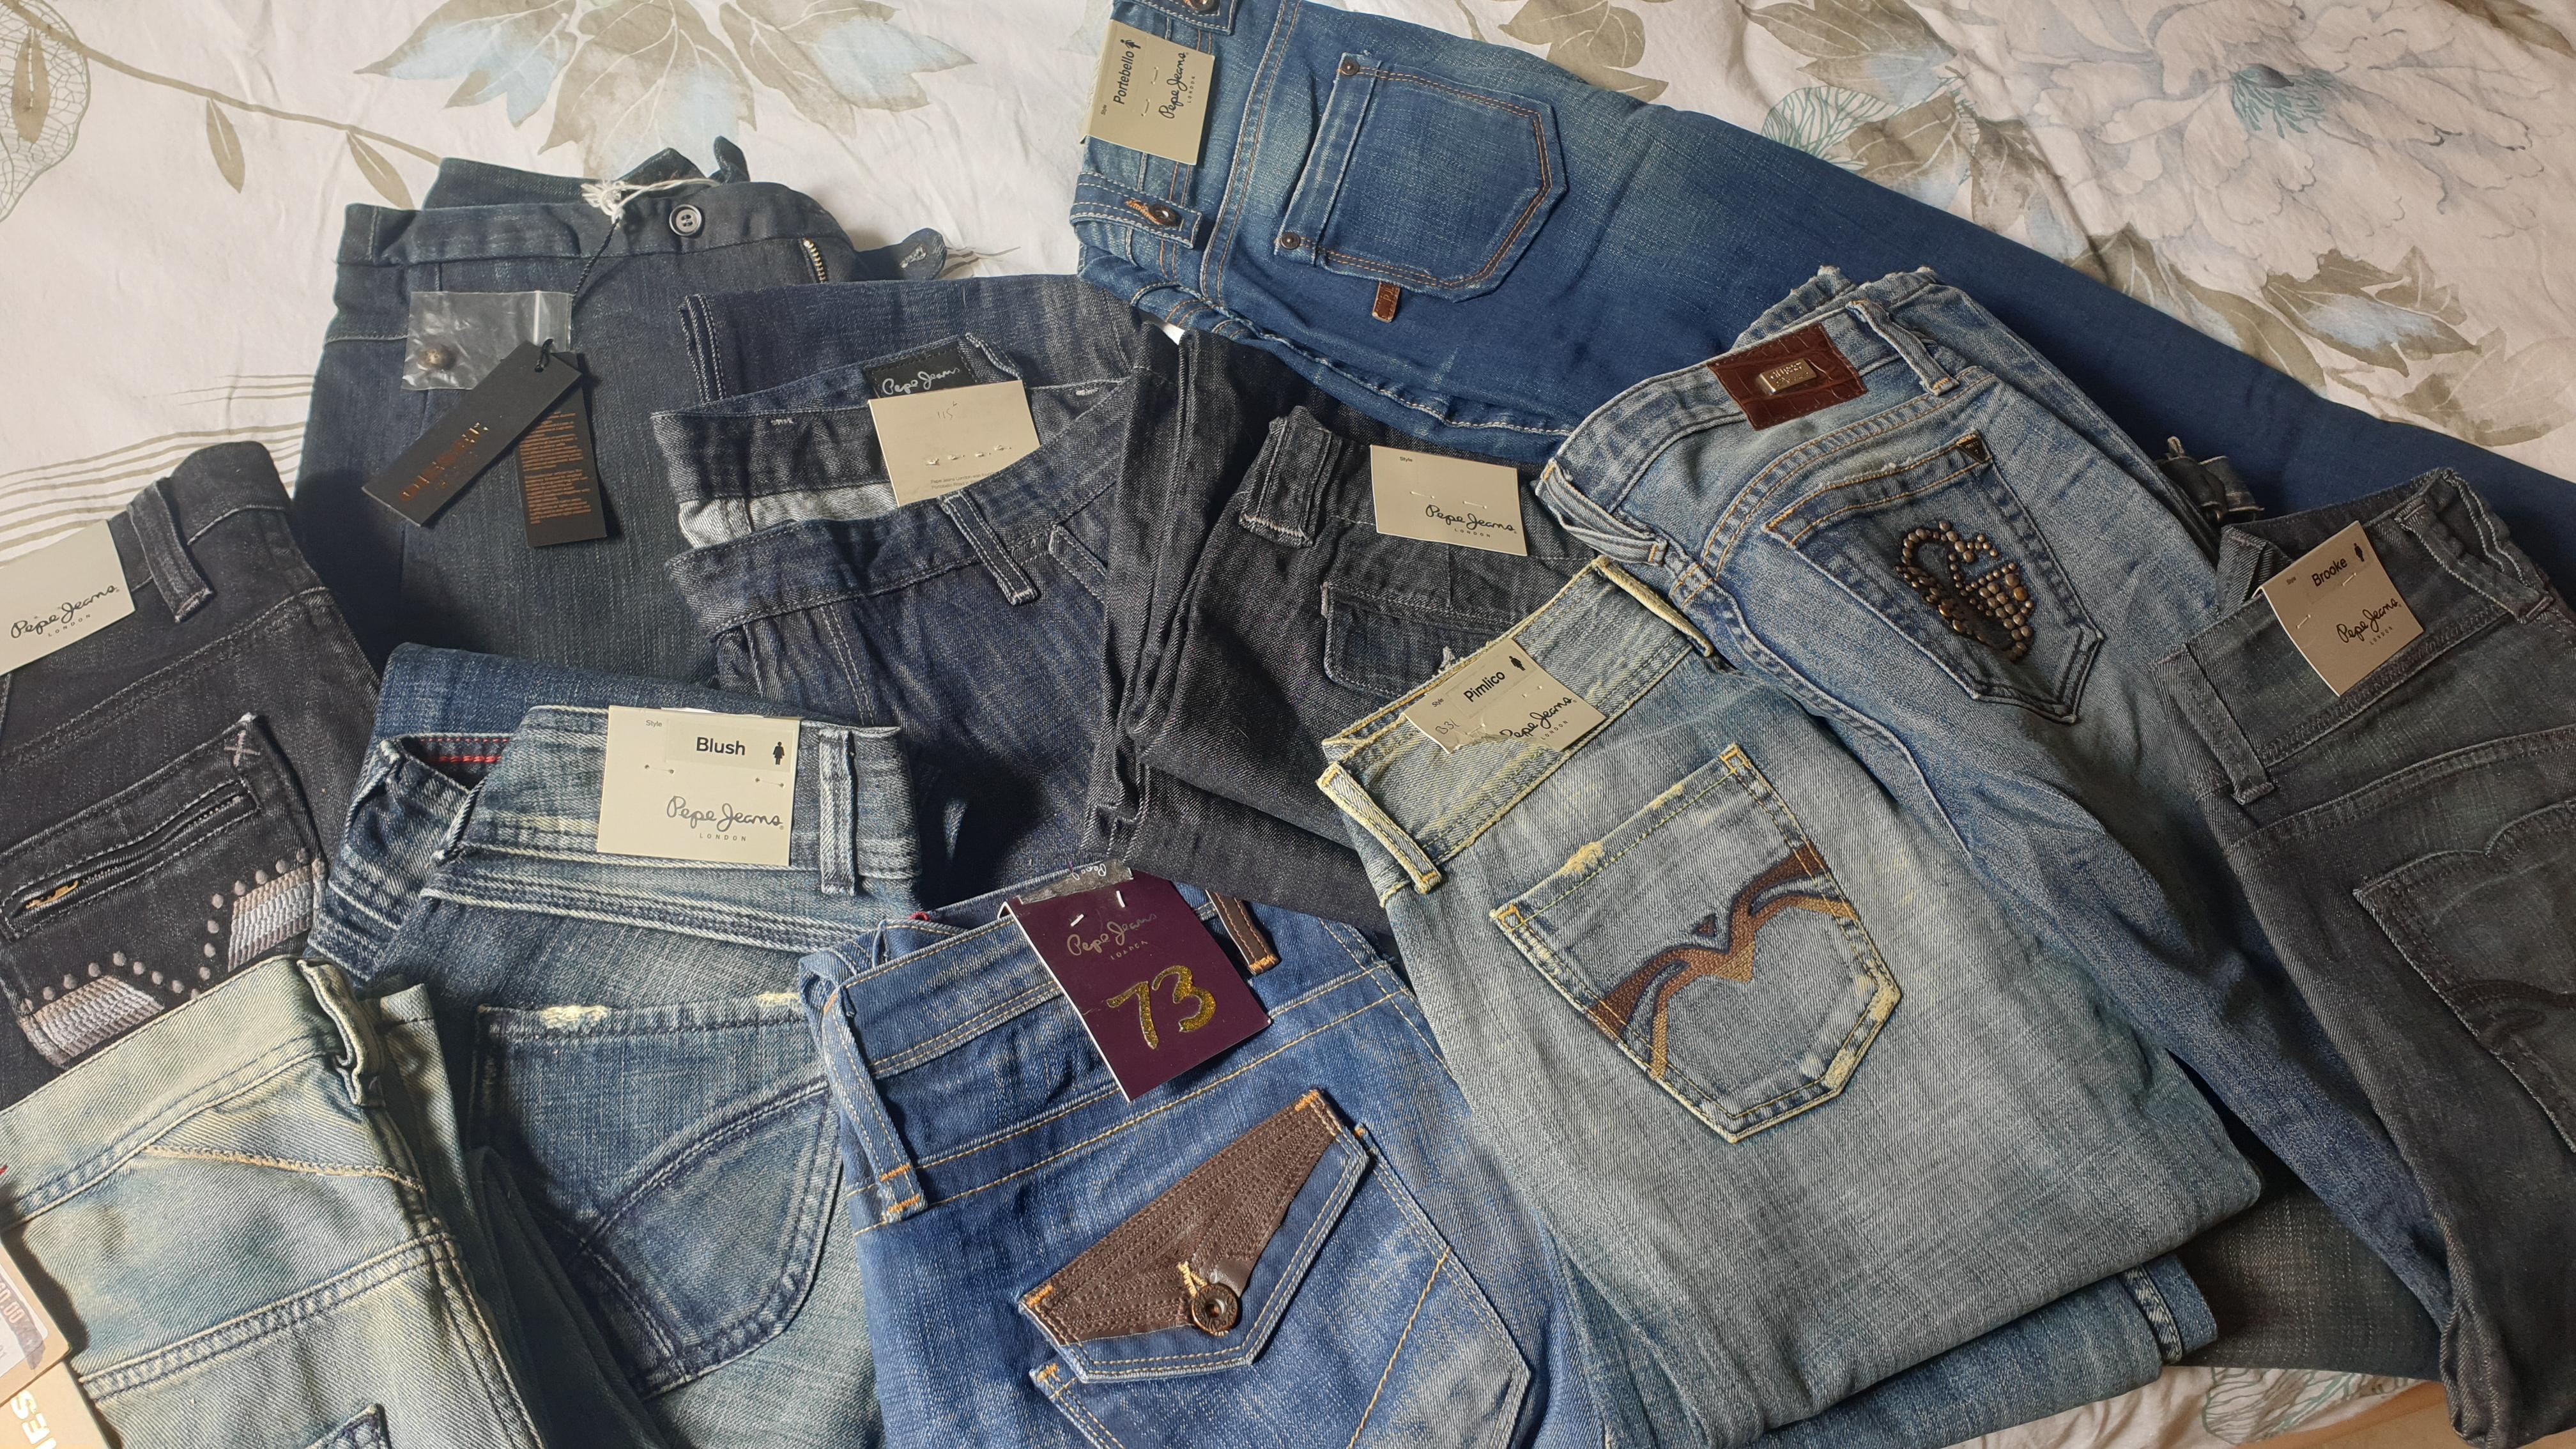 troc de troc echange jeans neufs contre proposition de votre part image 2